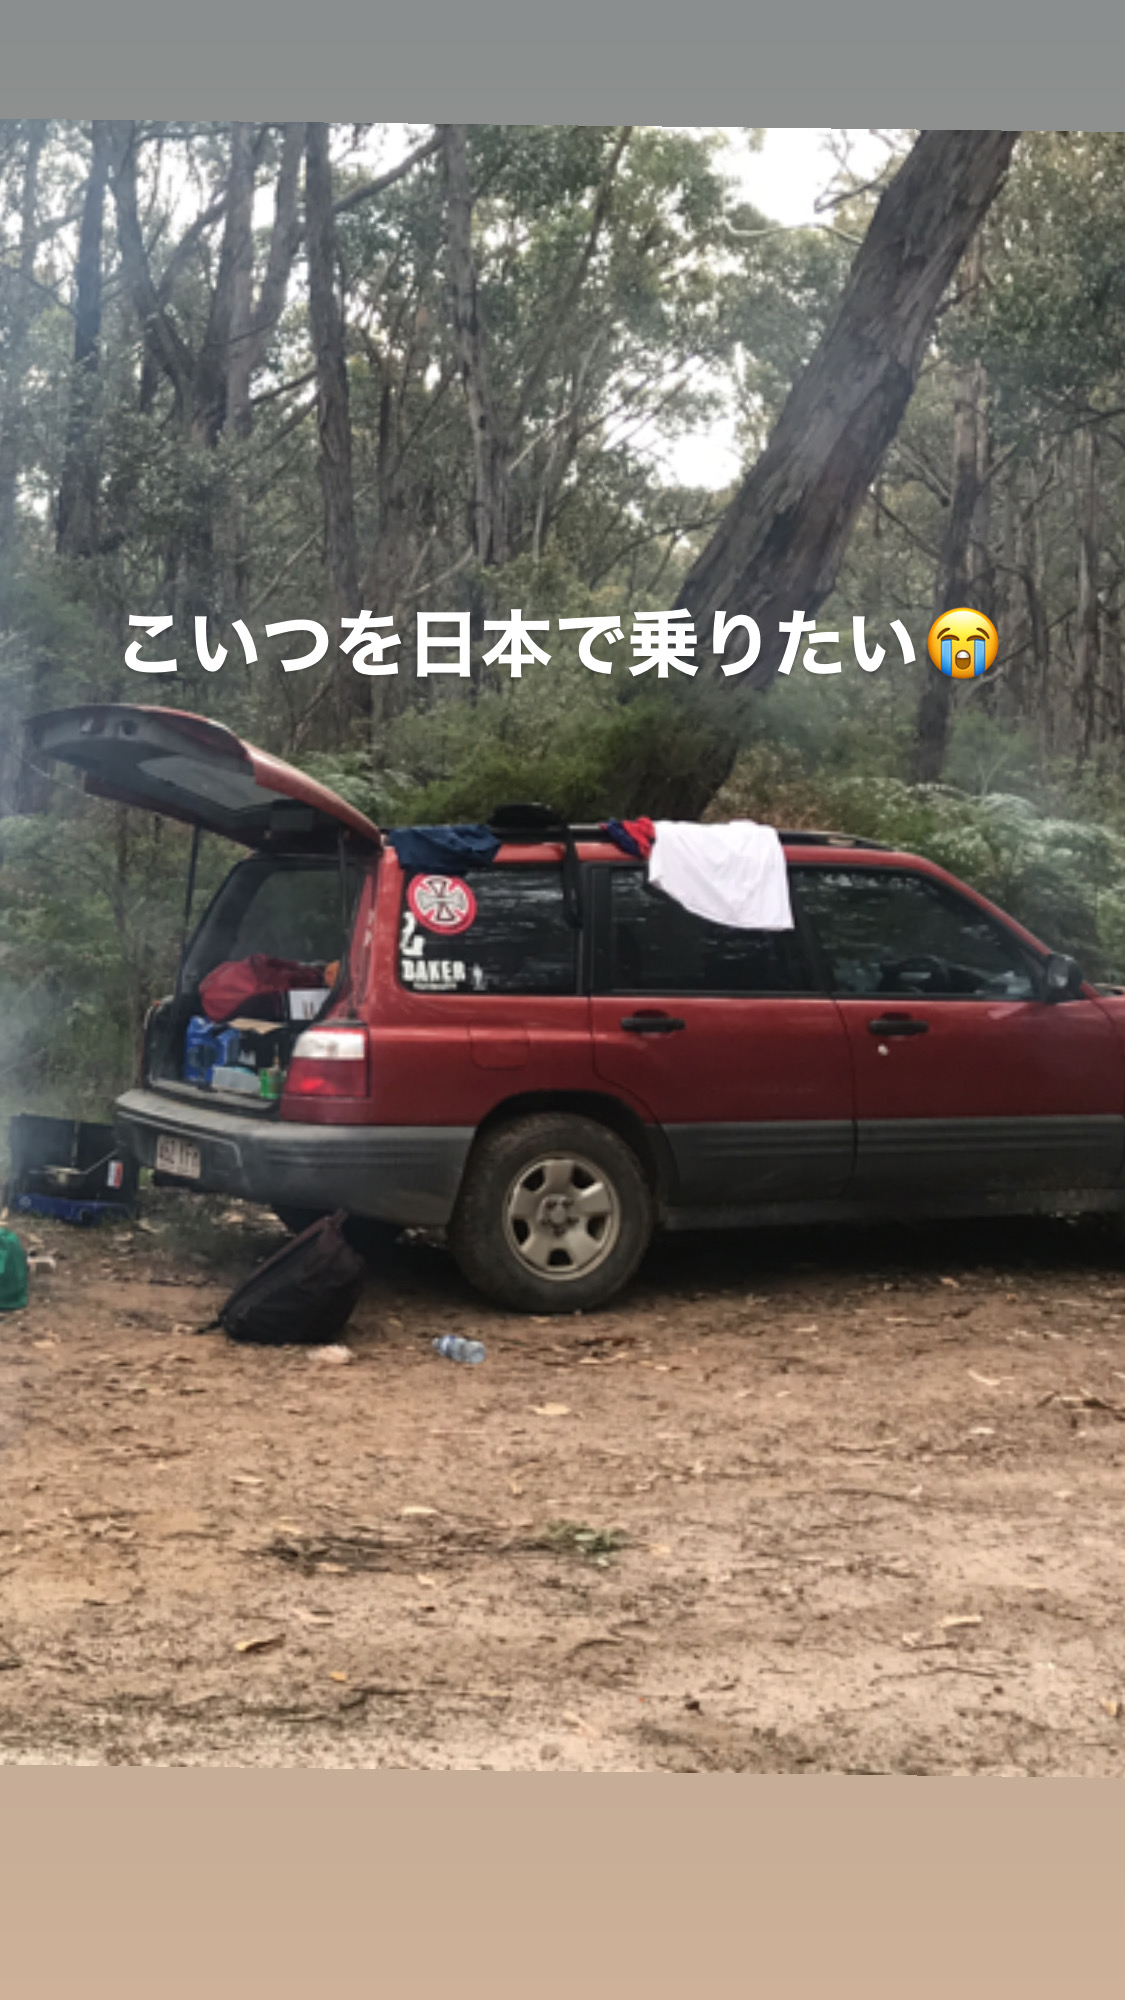 Subaru’s Australia life Vol,1